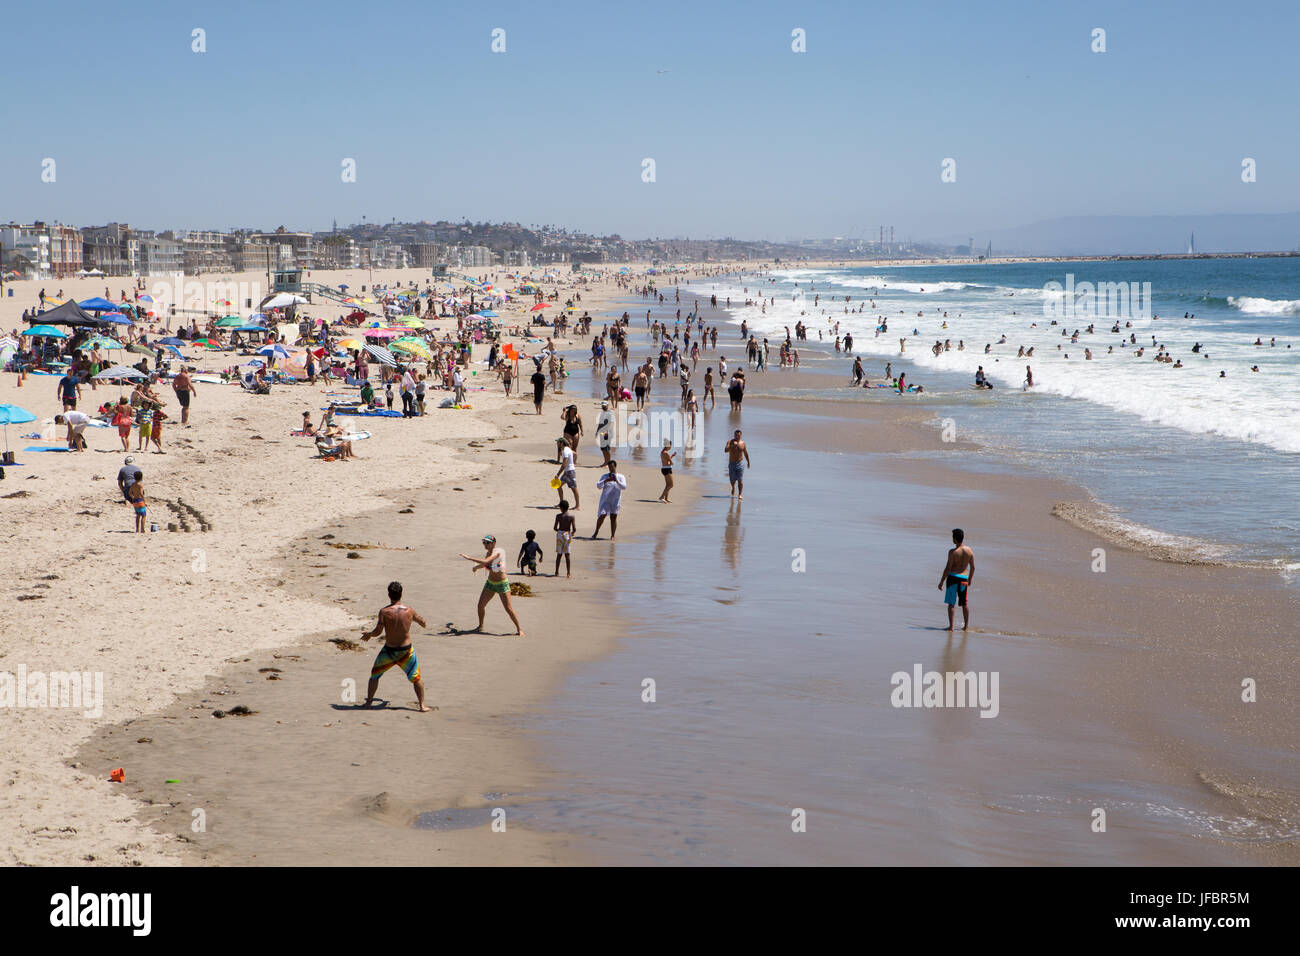 Les gens faire de la voile, surf, le sable, l'océan et de soleil à Venice Beach. Banque D'Images